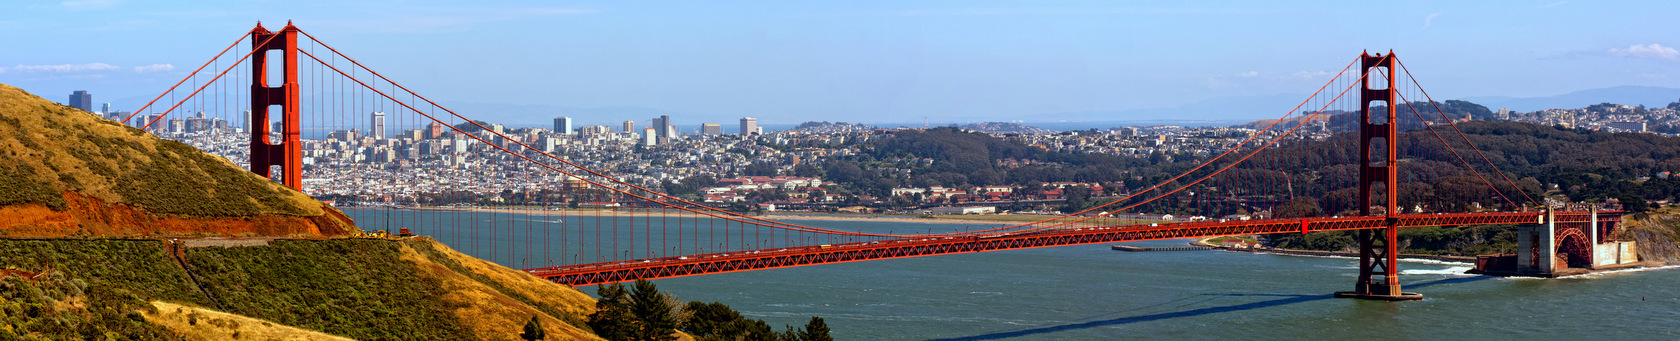 San Francisco - interesujące miasto do nauki języka angielskiego